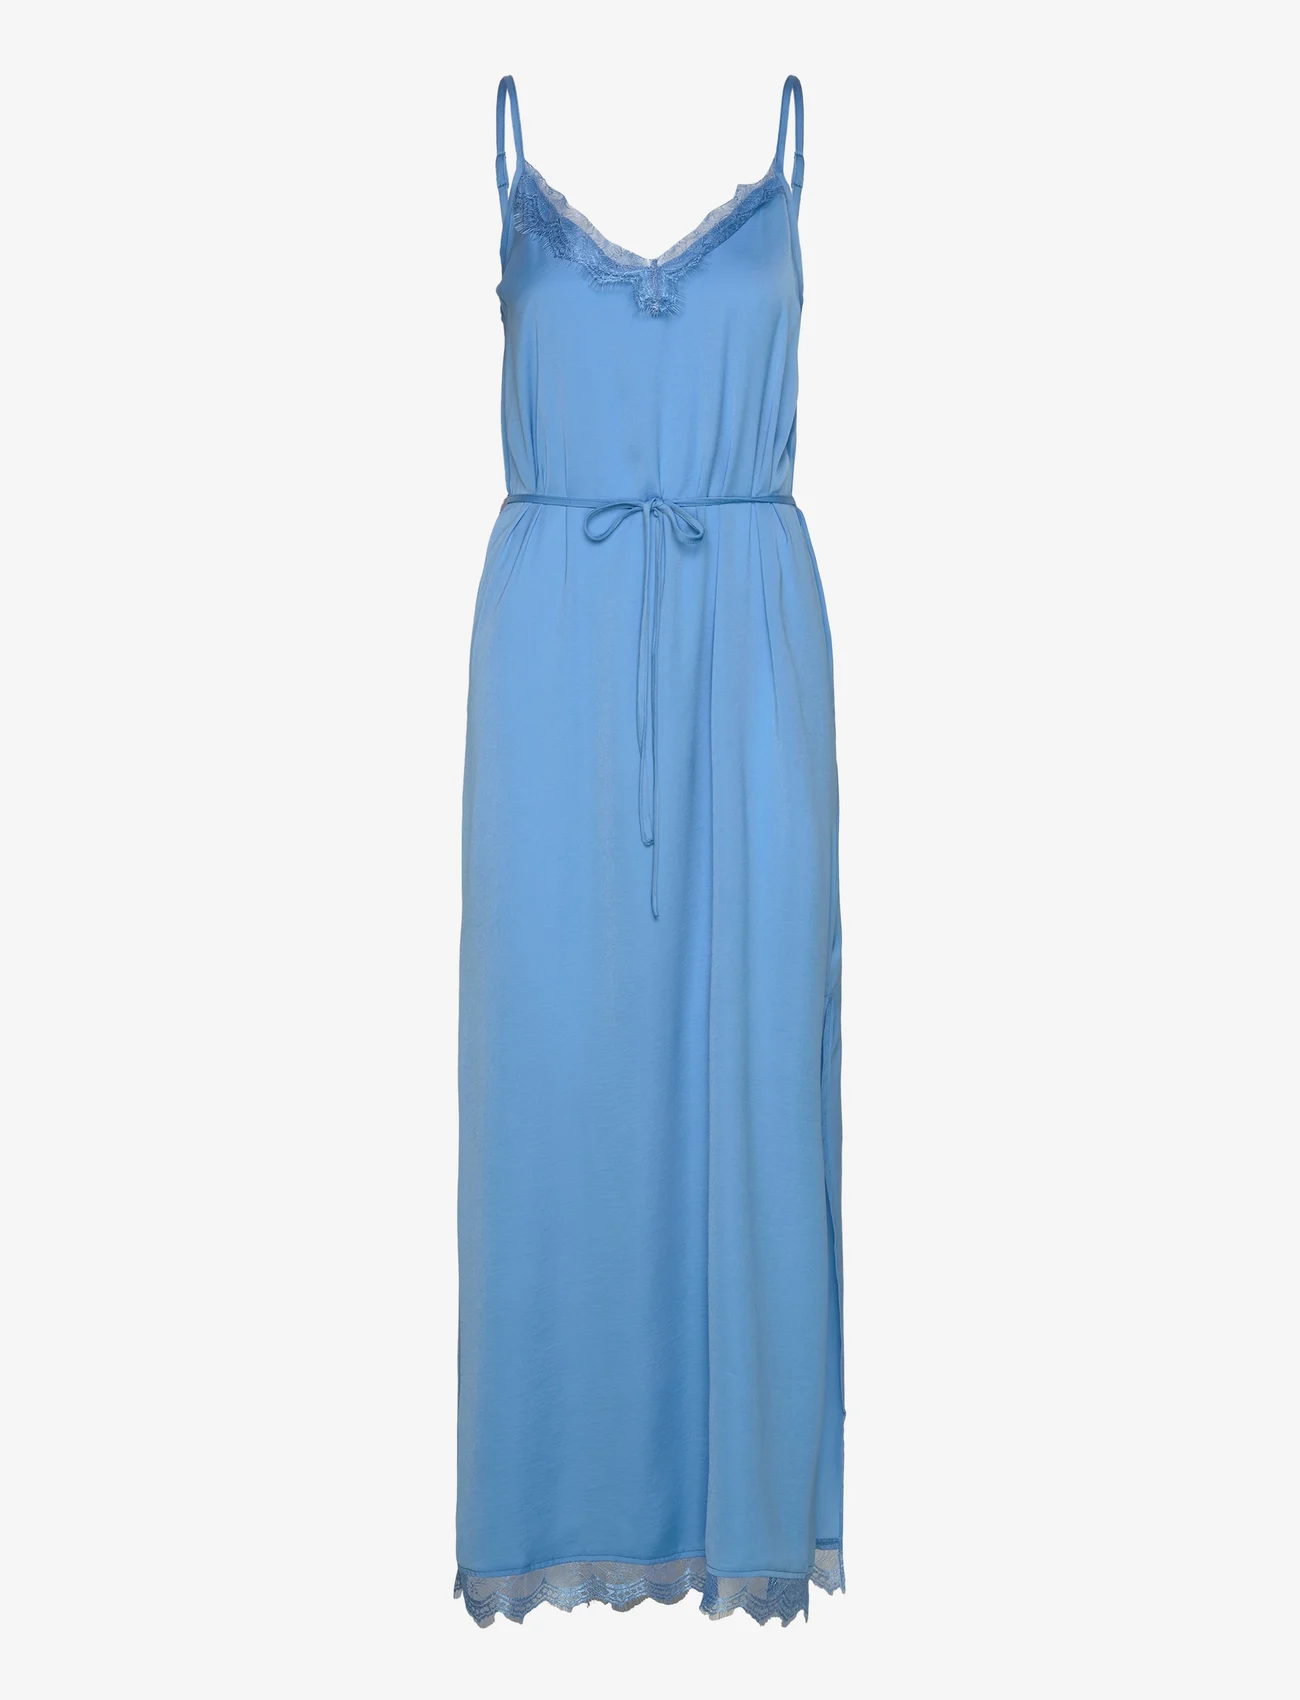 Saint Tropez - AshSZ Maxi Dress - slipklänningar - azure blue - 0